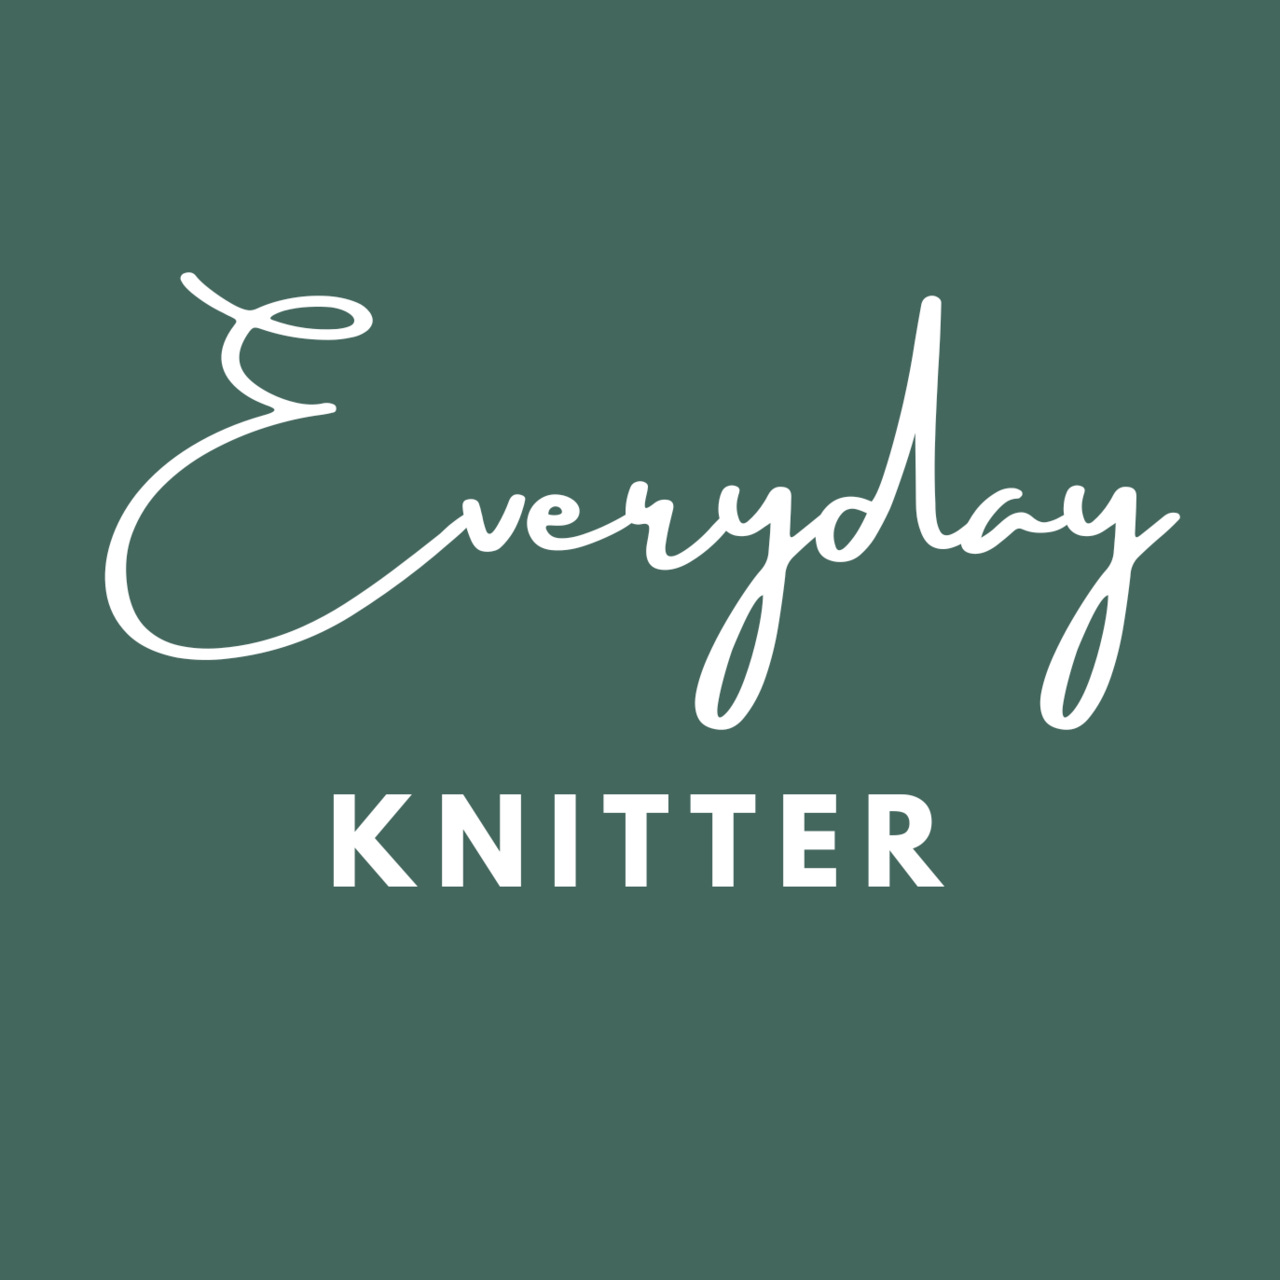 Artwork for Everyday Knitter